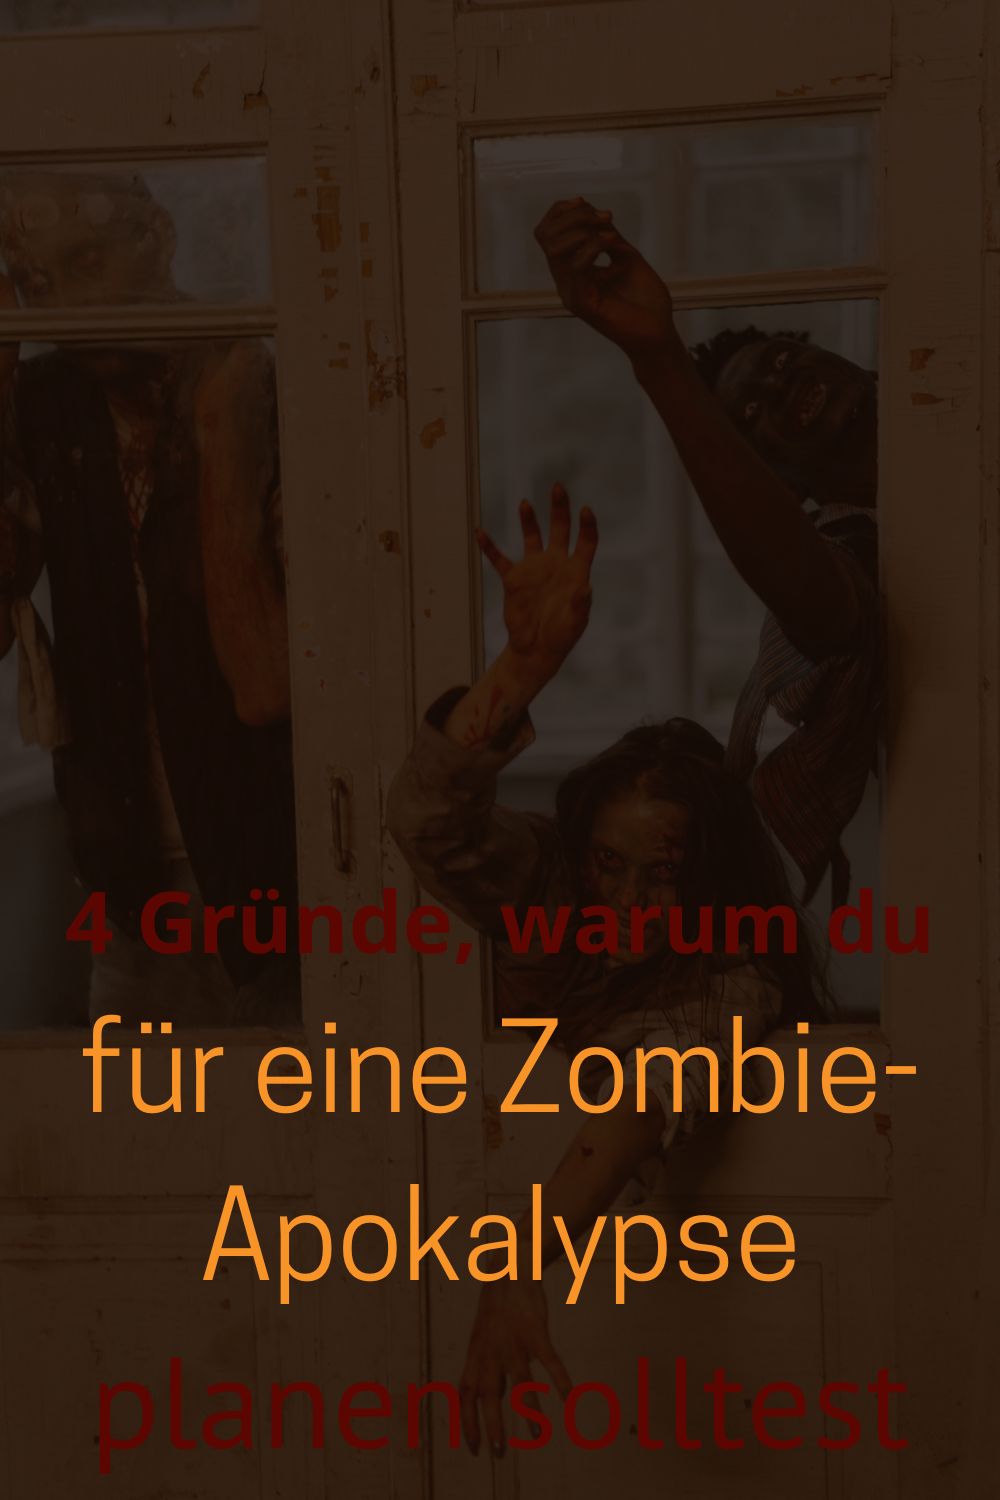 4-Gruende-warum-du-fuer-eine-Zombie-Apokalypse-planen-solltest